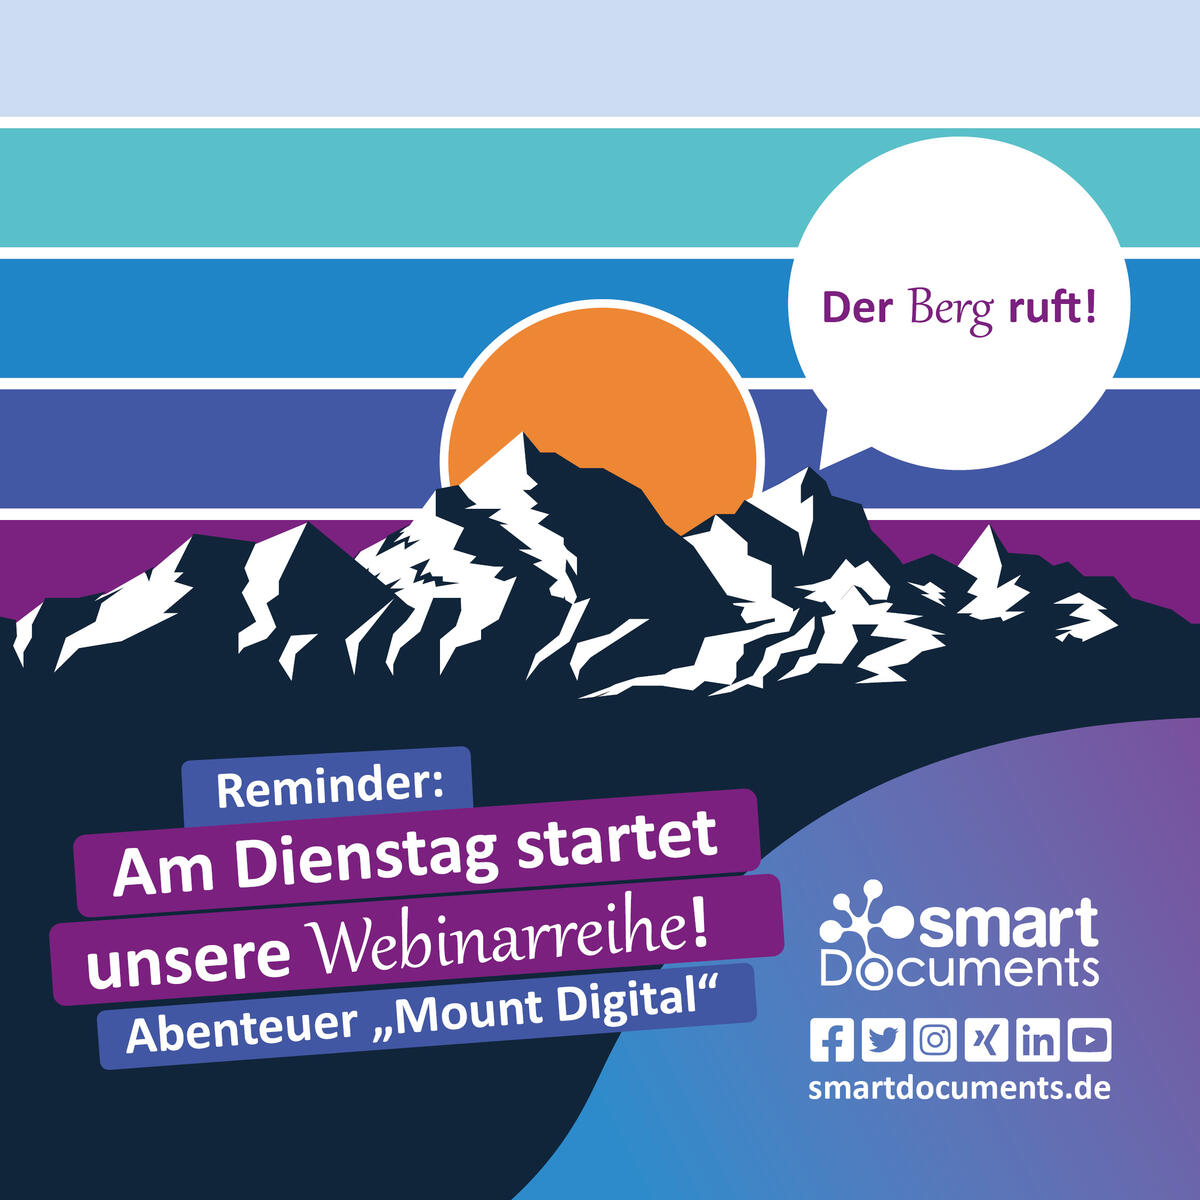 Vektorgrafik eines Berges mit Sprechblase "Der Berg ruft" sowie der Text: Der Berg ruft! Nächsten Dienstag startet unsere Webinarreihe "Abenteuer Mount Digital"